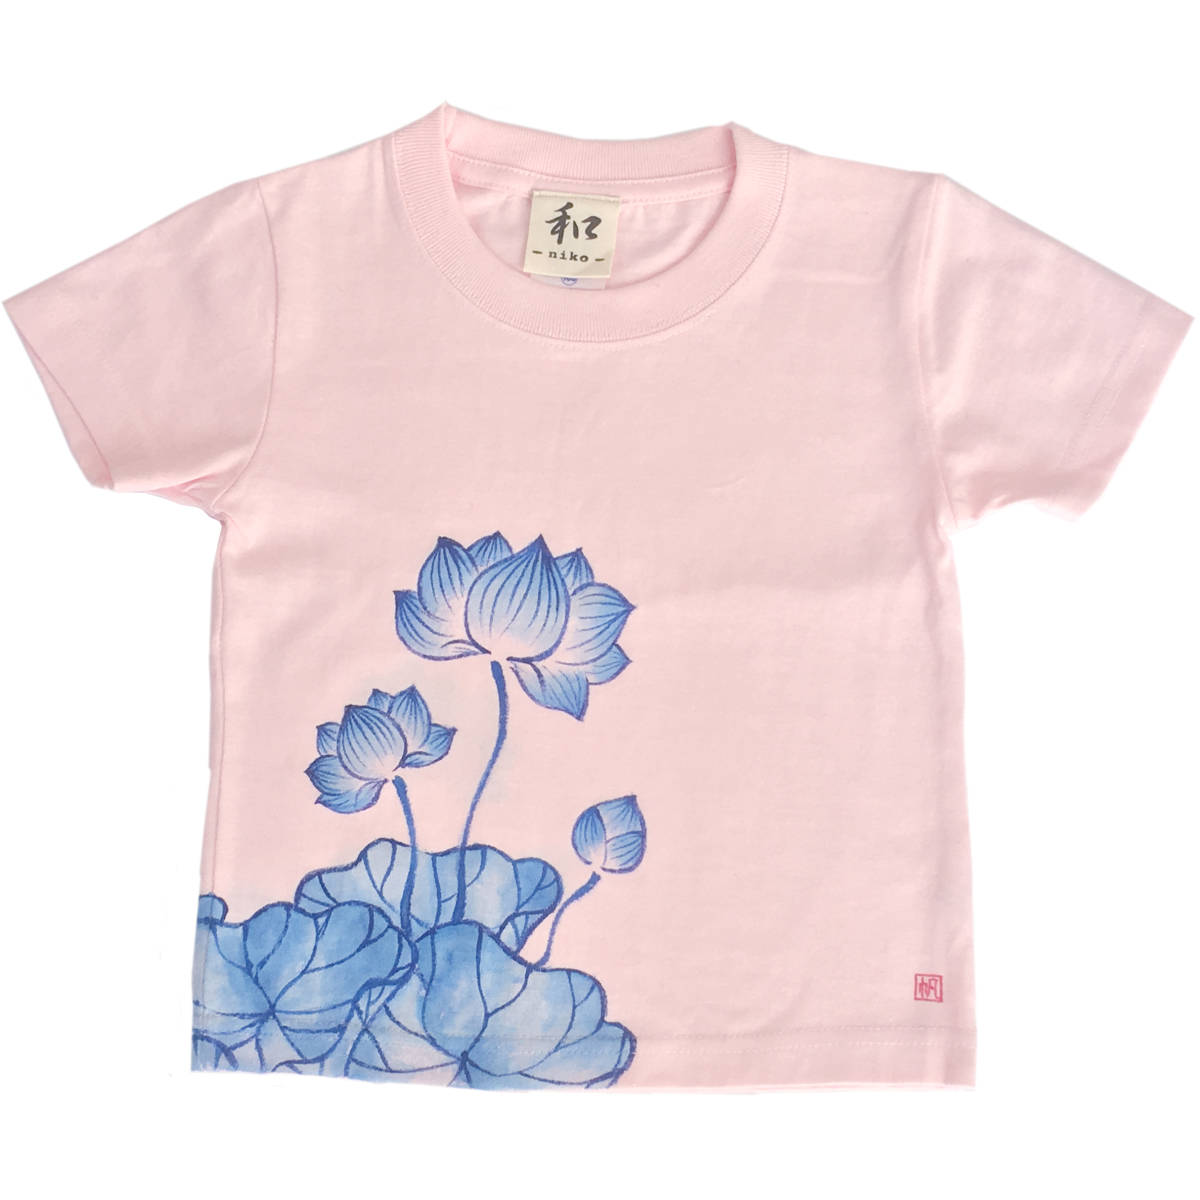 キッズ Tシャツ 150サイズ ピンク 蓮柄Tシャツ 手描きで描いた蓮の花柄Tシャツ 半袖 和柄 和風 レトロ ハンドメイド, トップス, 半袖Tシャツ, 150(145~154cm)